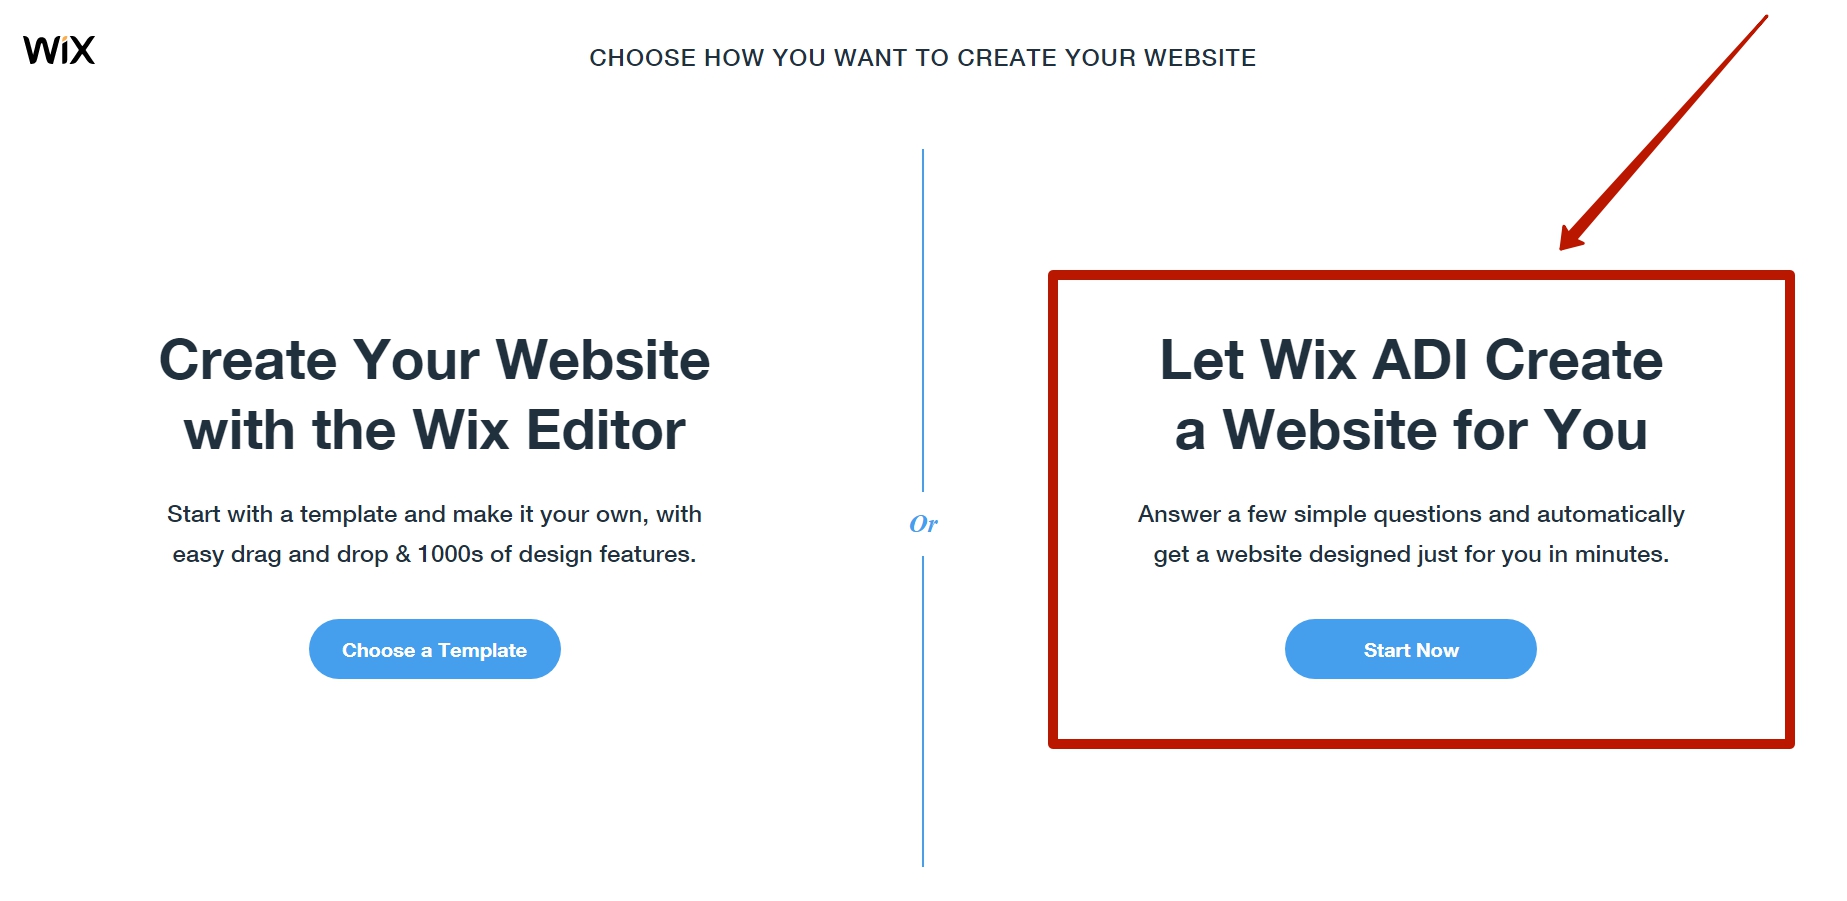 Якщо, при створенні сайту, Вами був обраний спосіб «Wix ADI» (необхідно відповісти на кілька запитань, щоб отримати заготовку сайту), то спочатку необхідно перейти в режим розширеного редактора: